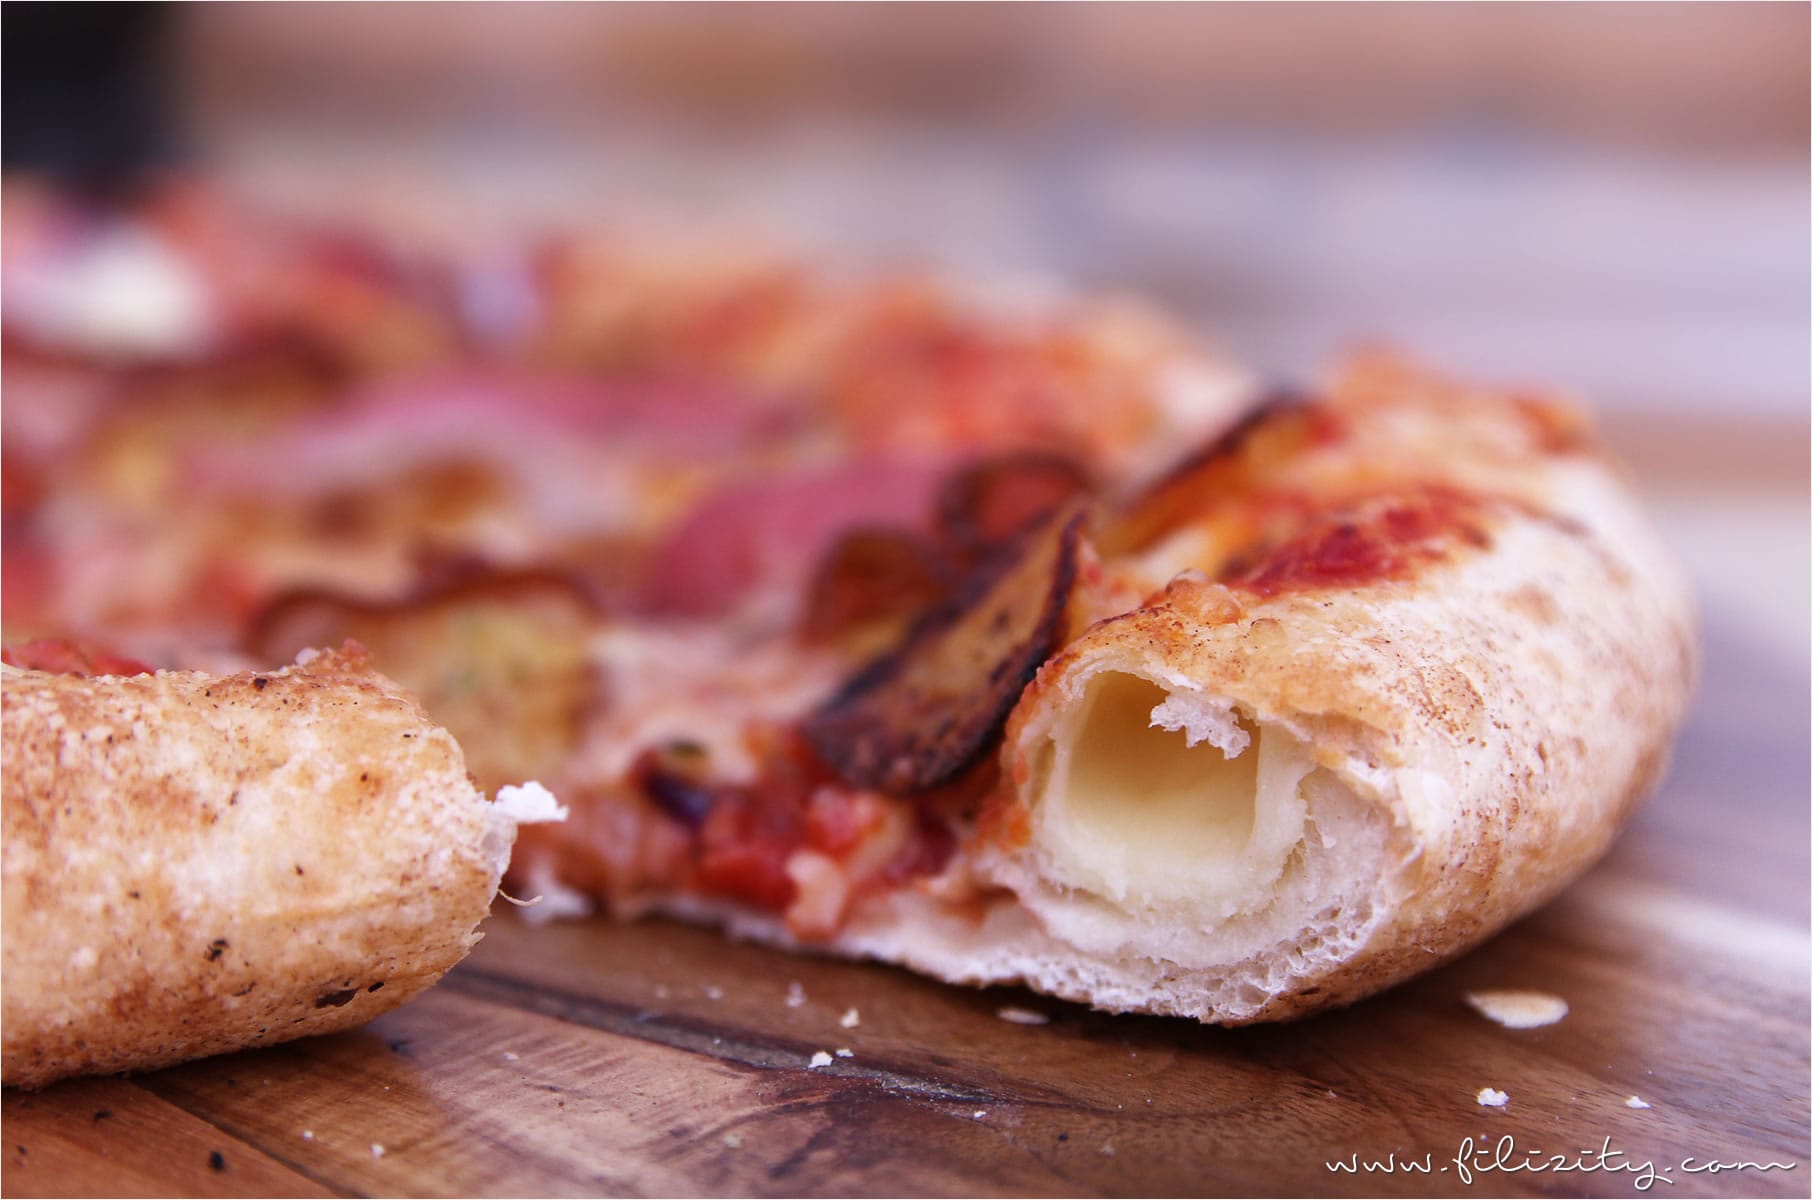 Lecker ist lecker! Geburtstag feiern mit Hallo Pizza